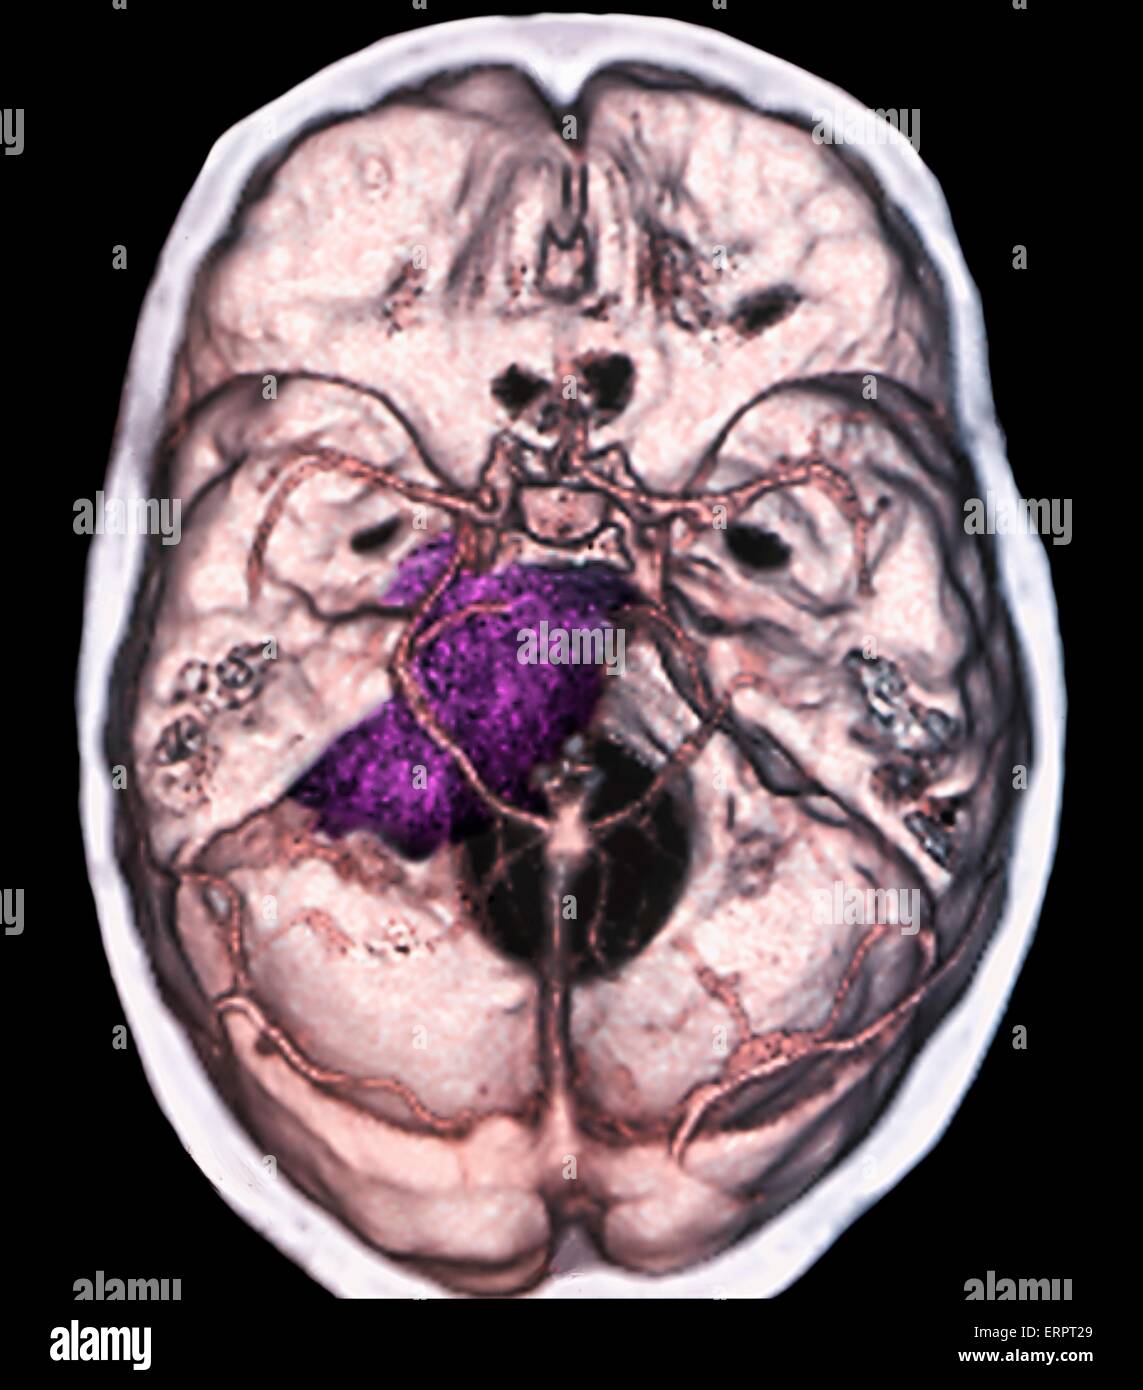 Tumeur bénigne au cerveau. La tomodensitométrie (CT de couleur) du cerveau d'un patient de 48 ans avec un méningiome (violet). Il s'agit d'une bénigne (non cancéreuse) tumeur qui découle de la méninges, les membranes qui entourent le cerveau. Banque D'Images